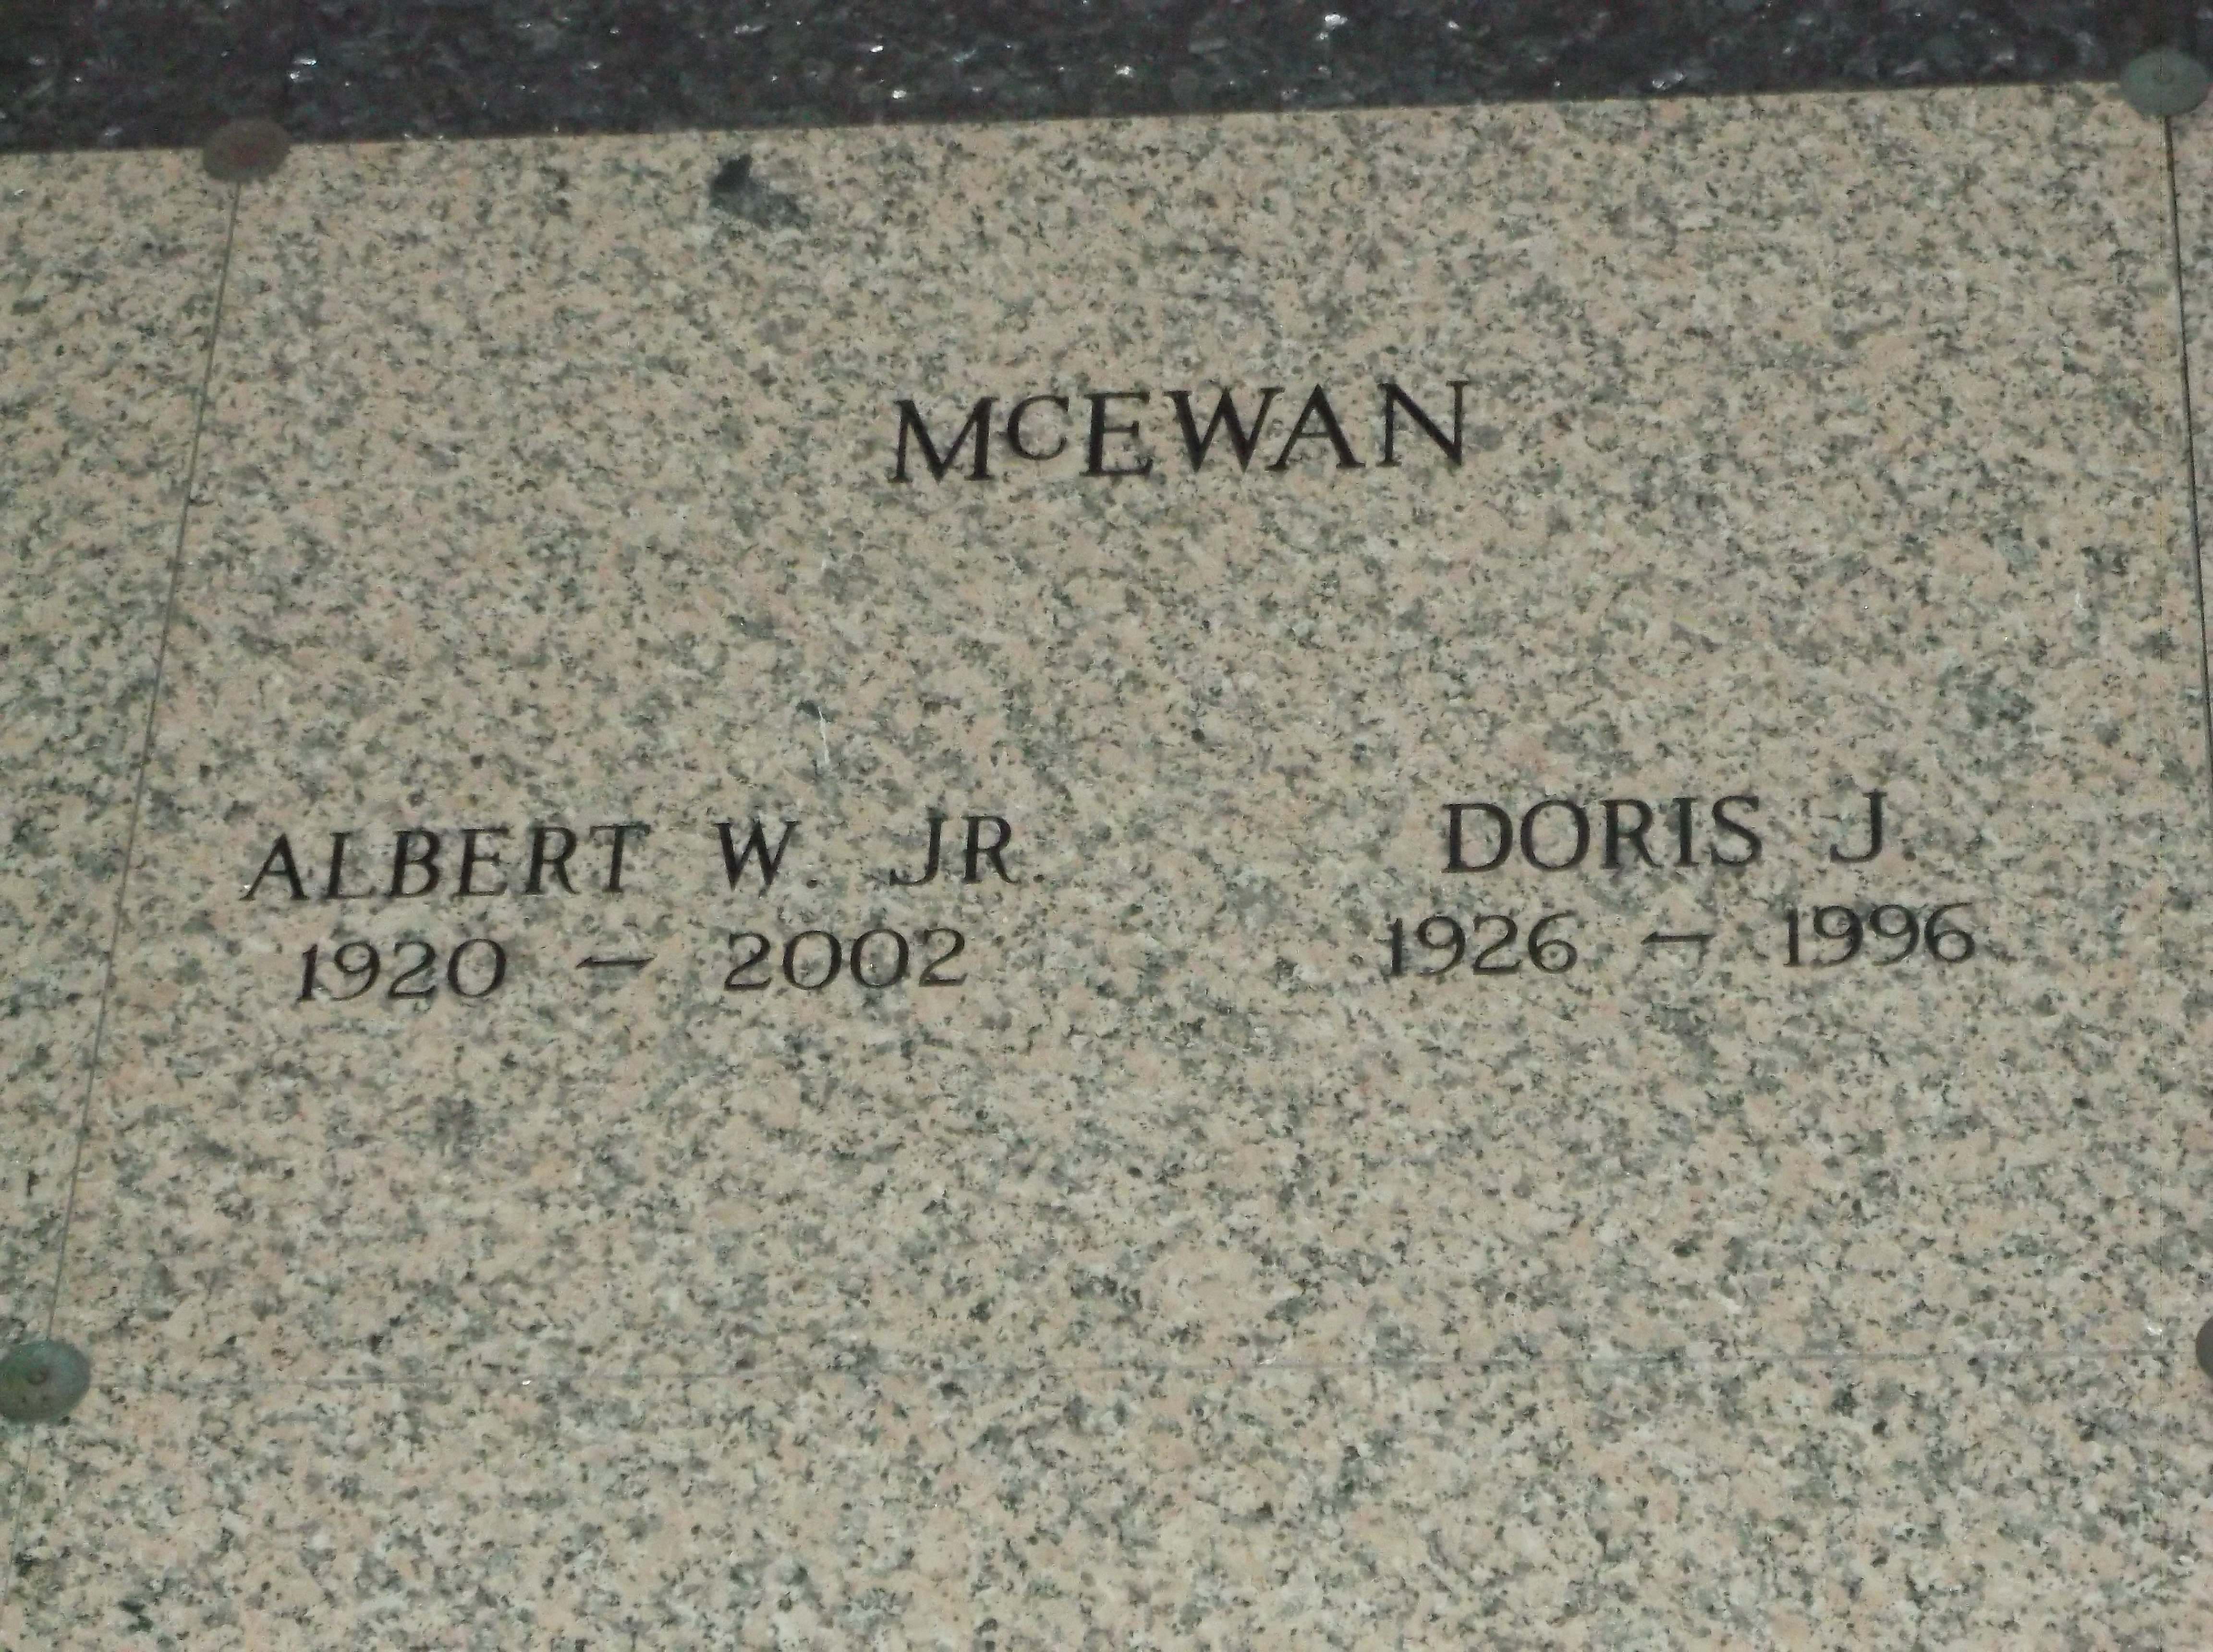 Doris J McEwan